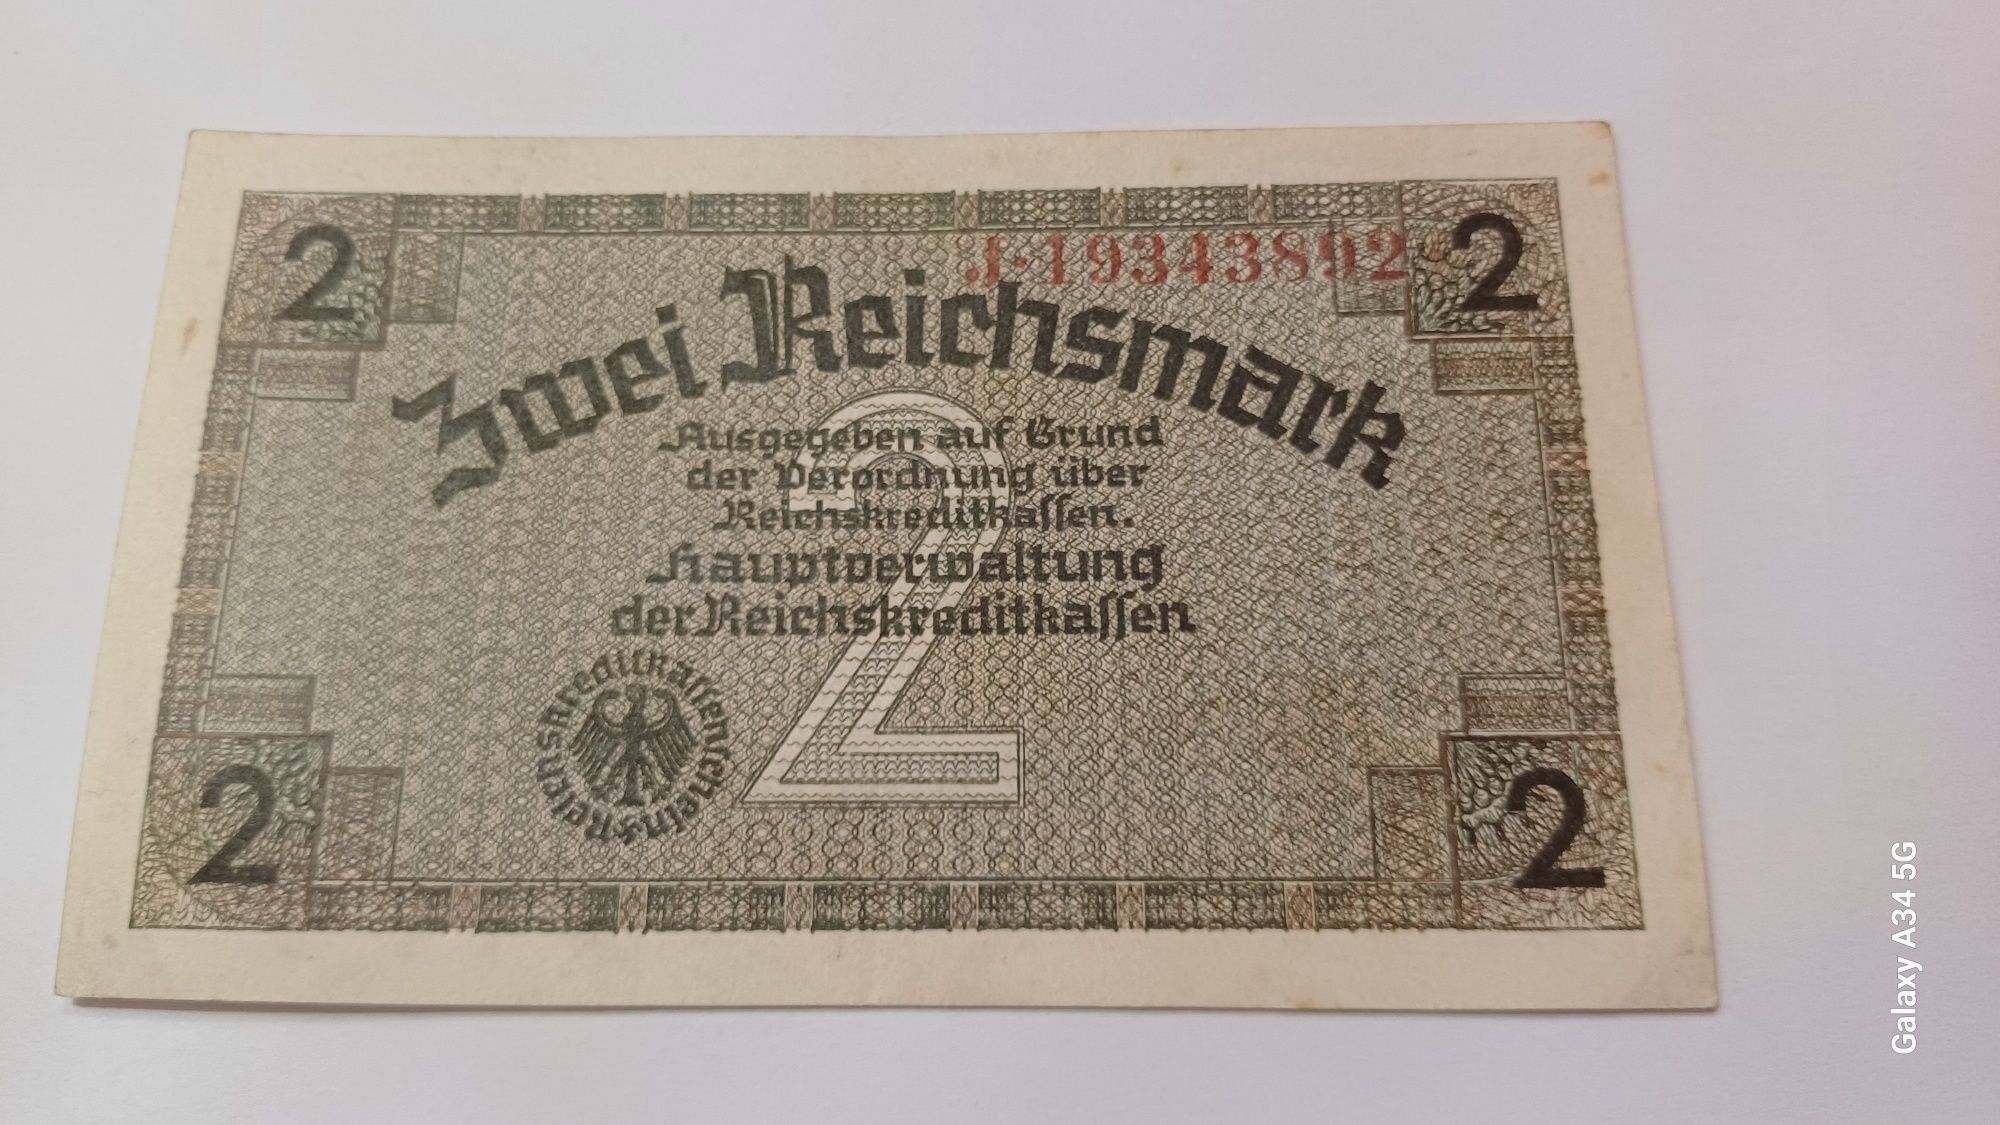 PROMOÇÃO--2 reichsmark REICHSKREDITKASSEN ORIGINAL Alemanha nazi-suást